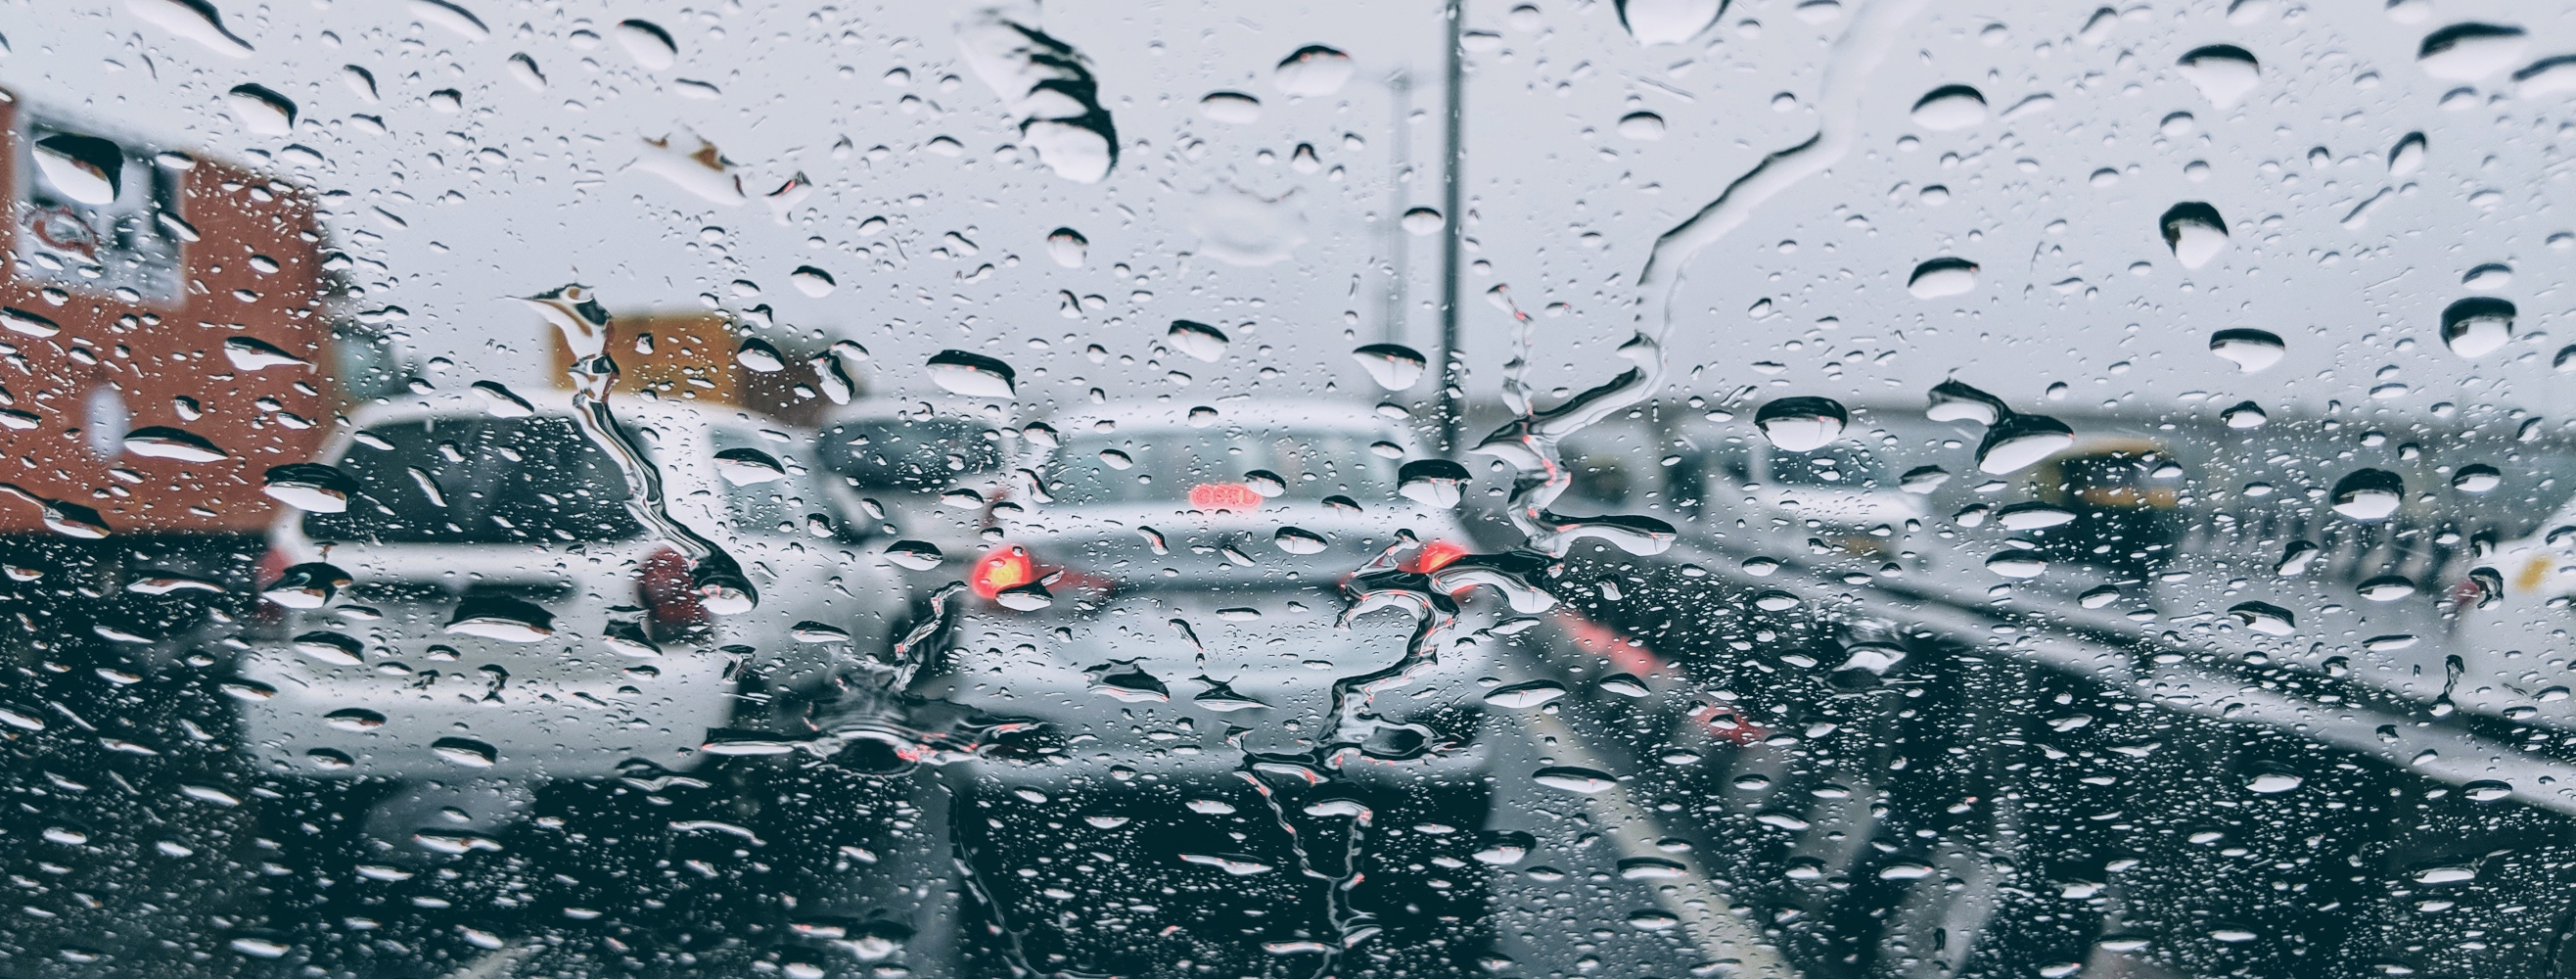 Krople deszczu na szybie bez włączonych wycieraczek samochodowych.